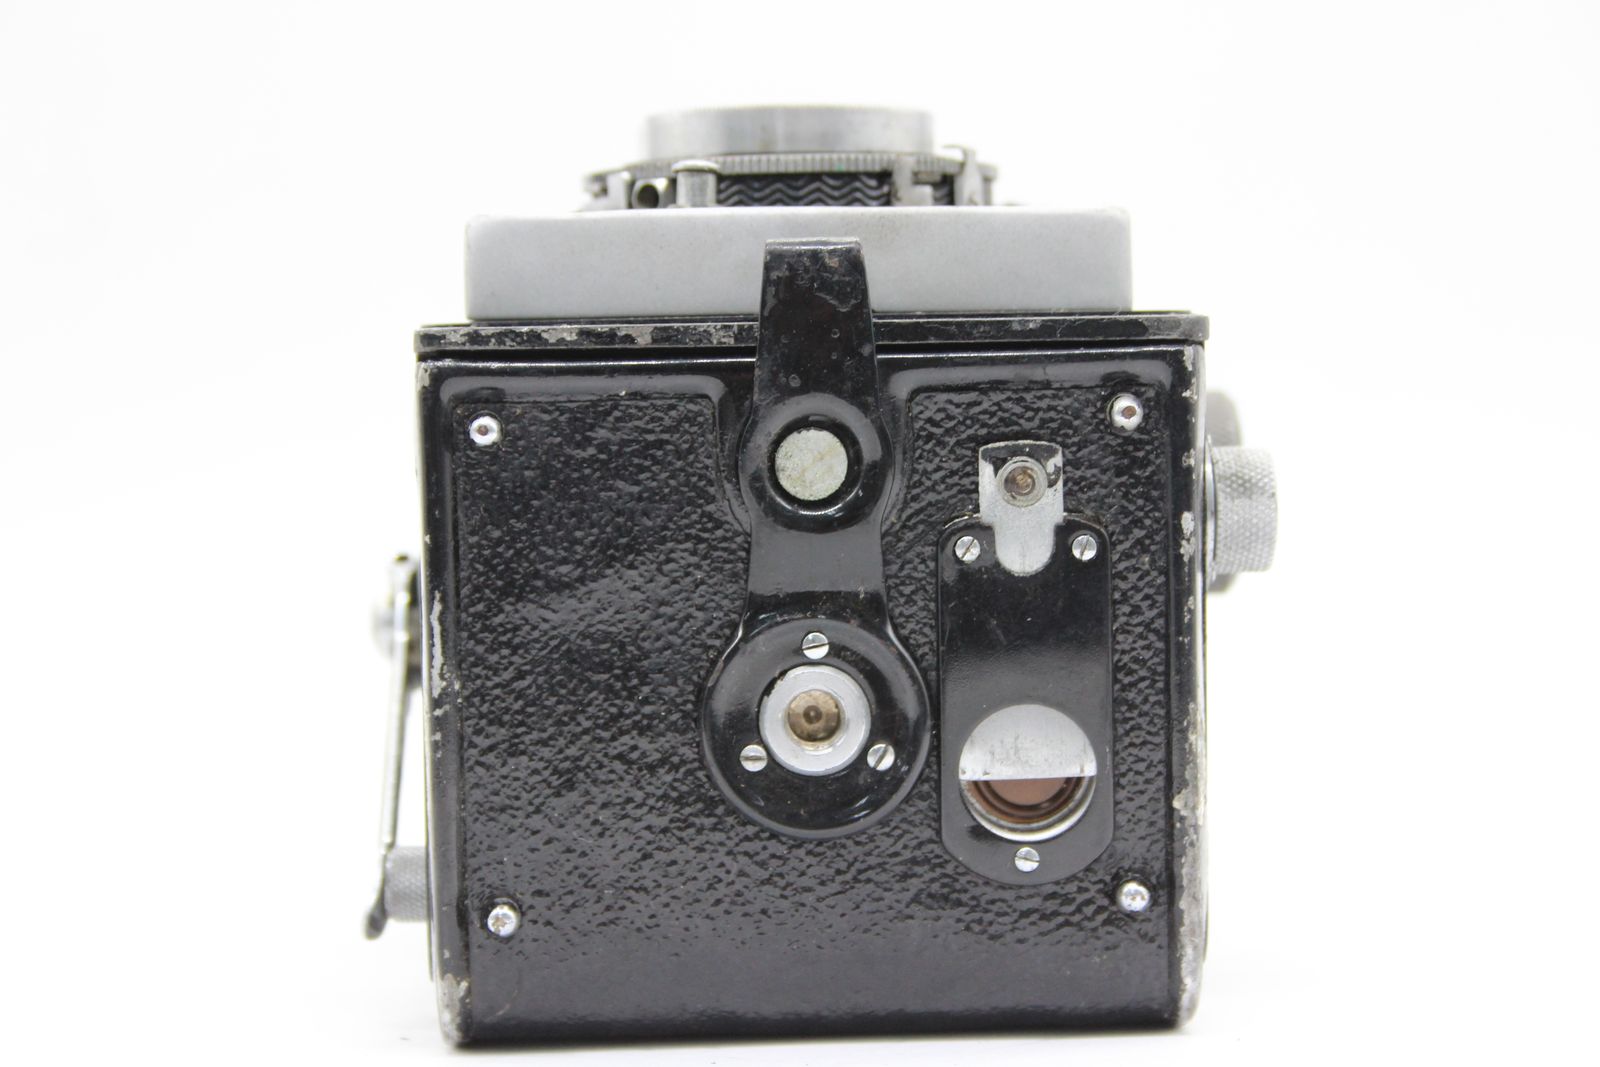 訳あり品】 ミノルタ Minolta Automat Promar 75mm F3.5 二眼カメラ 